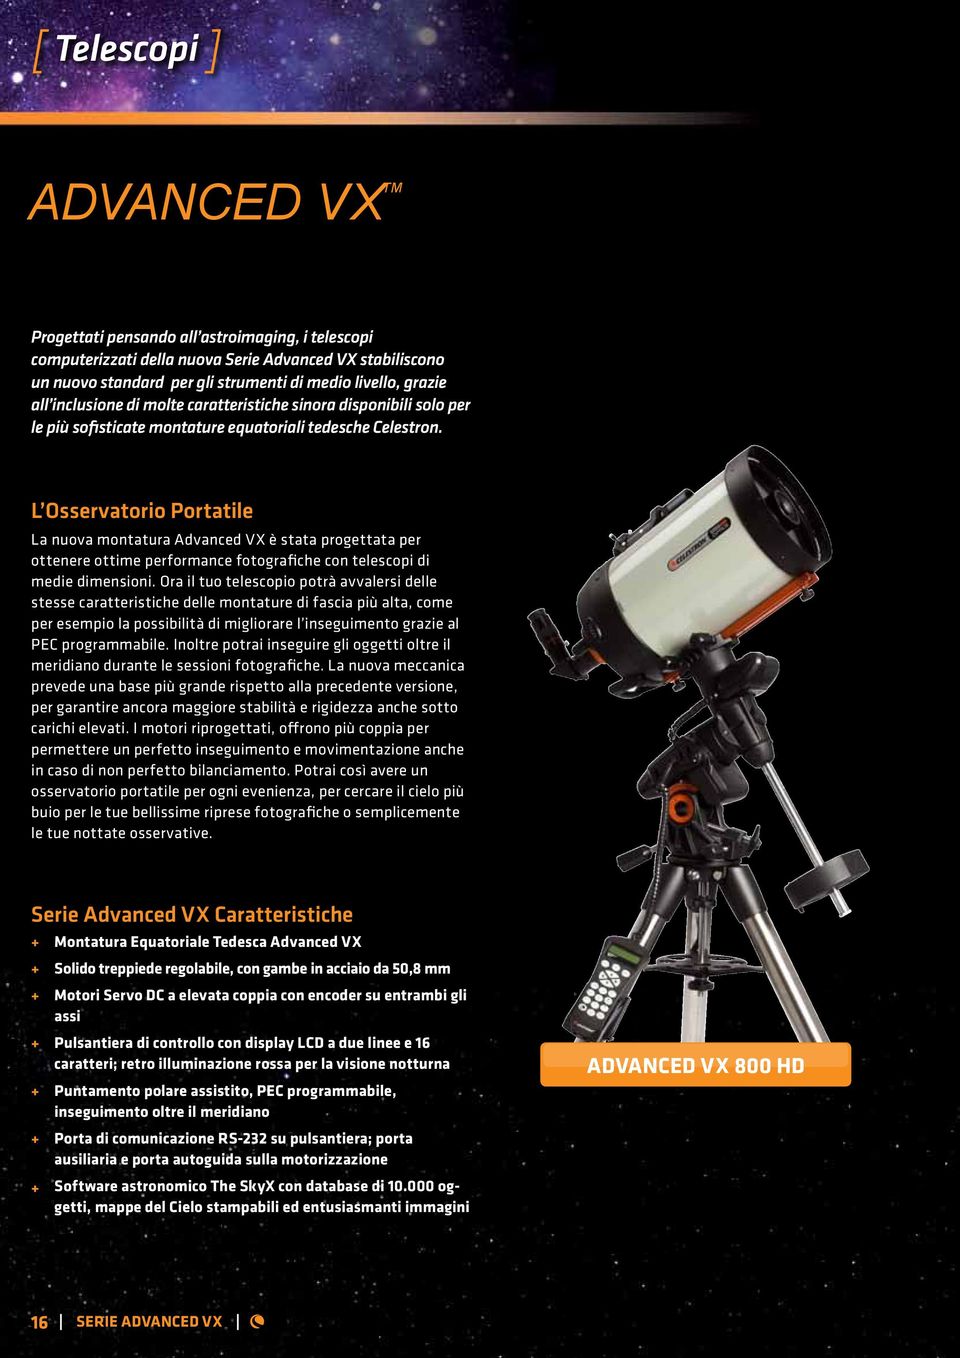 L Osservatorio Portatile La nuova montatura Advanced VX è stata progettata per ottenere ottime performance fotografiche con telescopi di medie dimensioni.